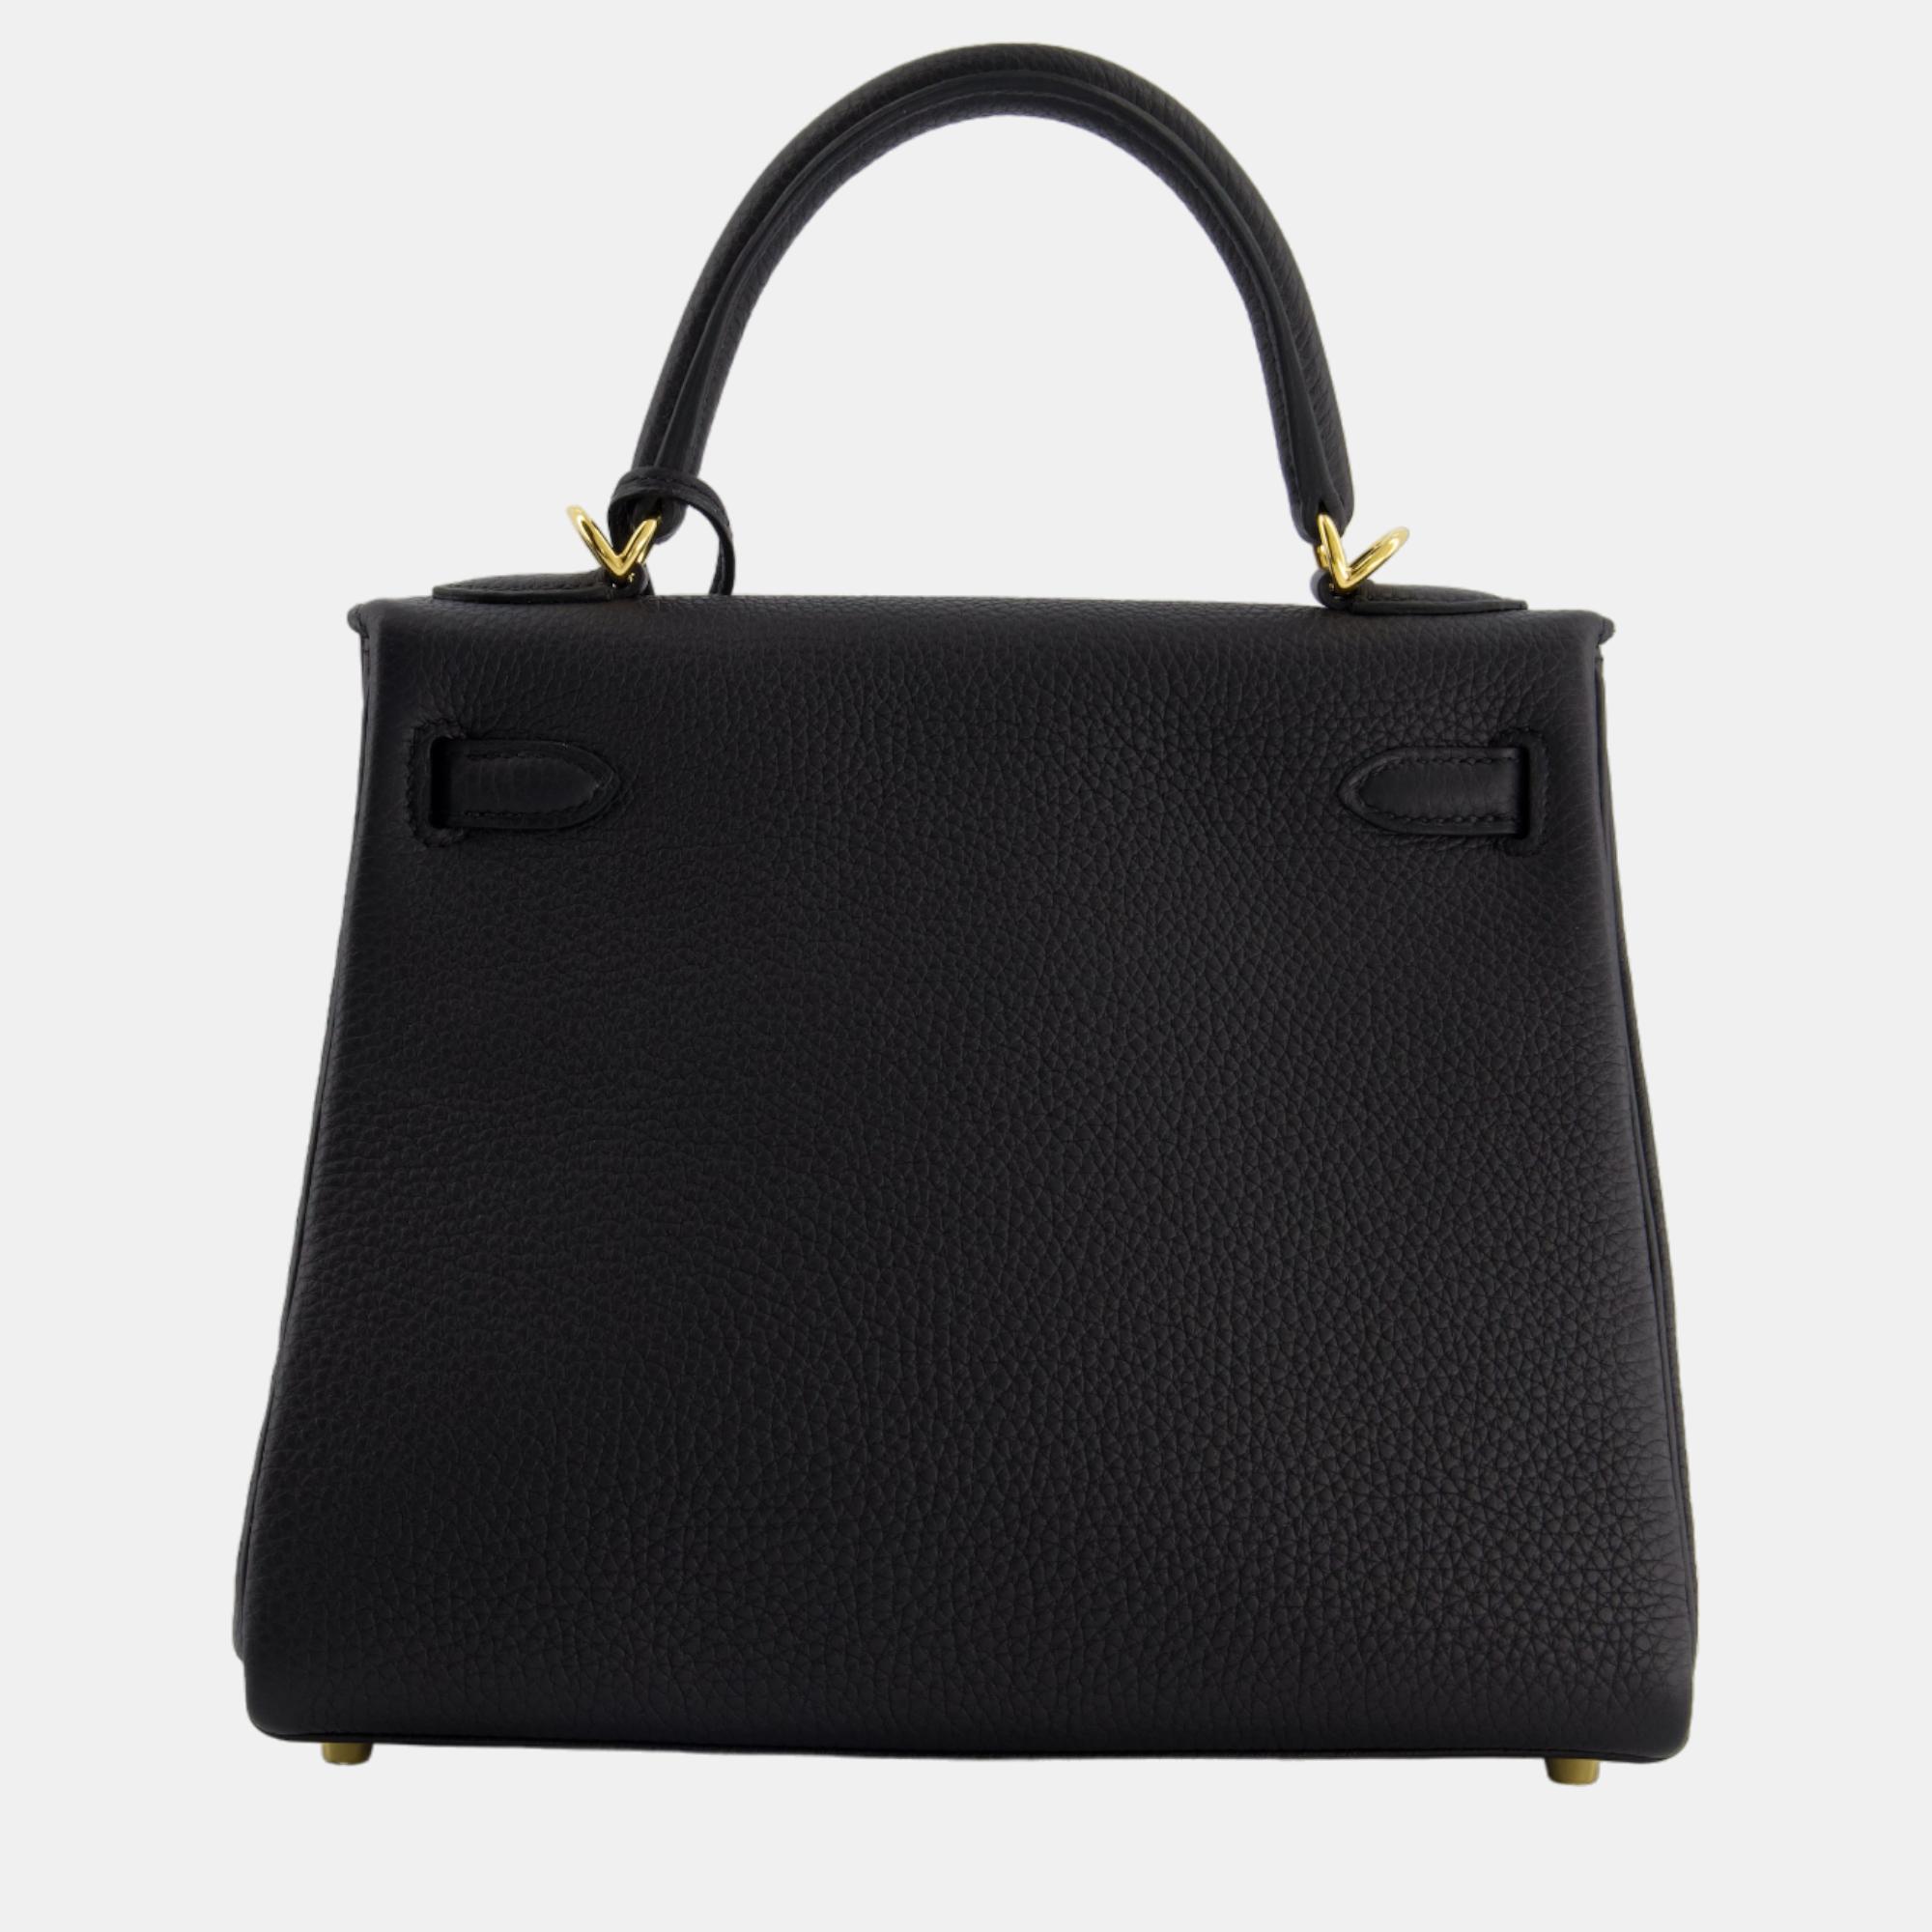 Hermes Kelly Bag 25cm Retourne In Black Togo Leather And Gold Hardware